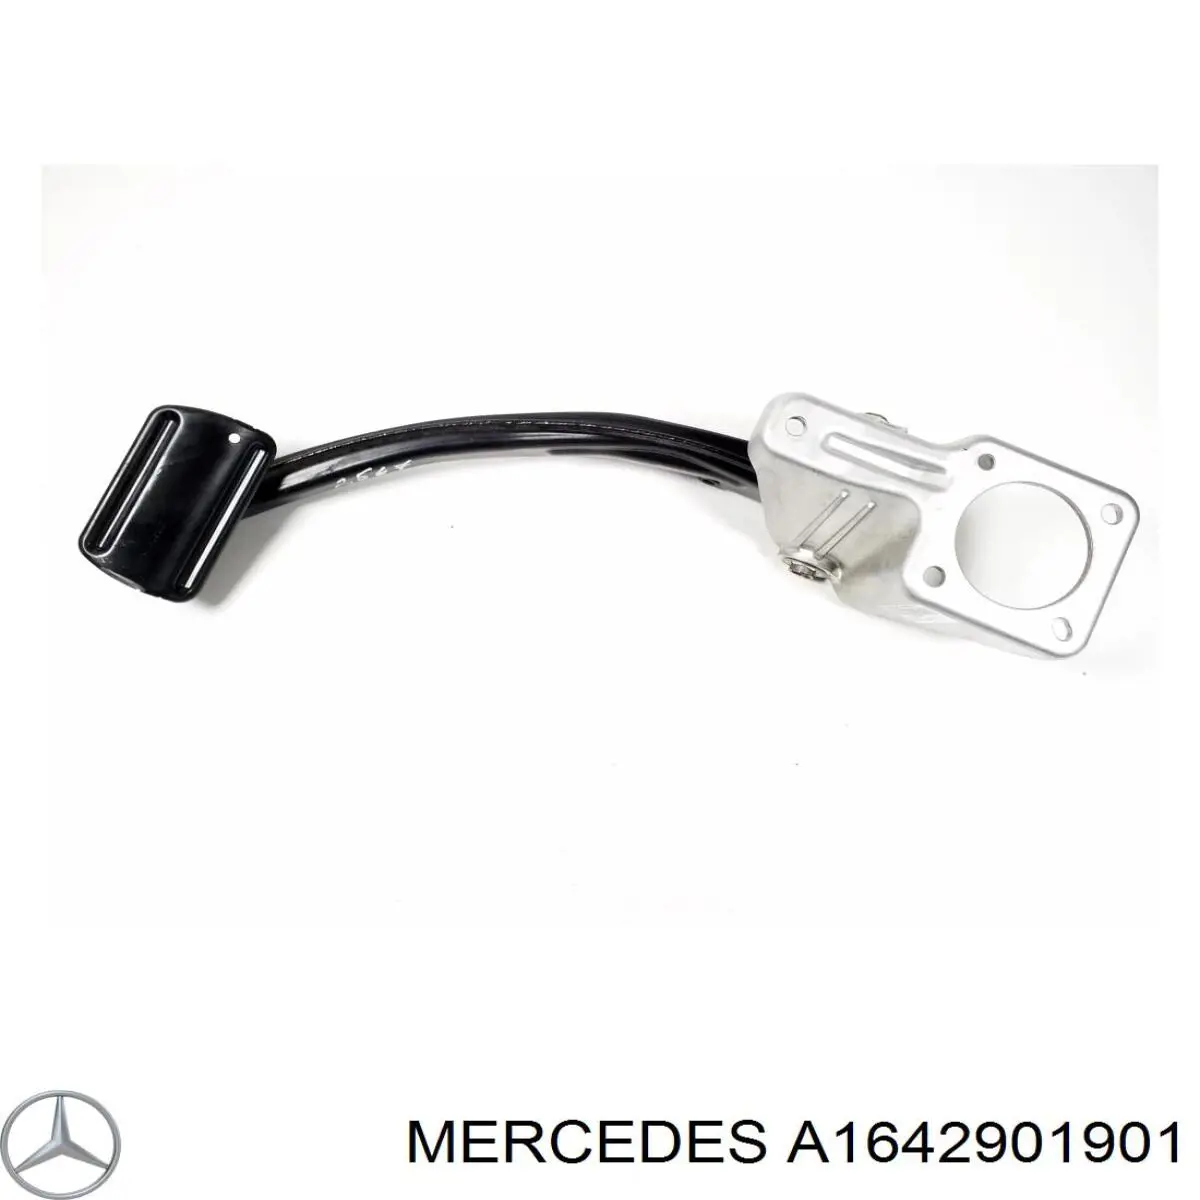 Pedal do freio para Mercedes ML/GLE (W164)